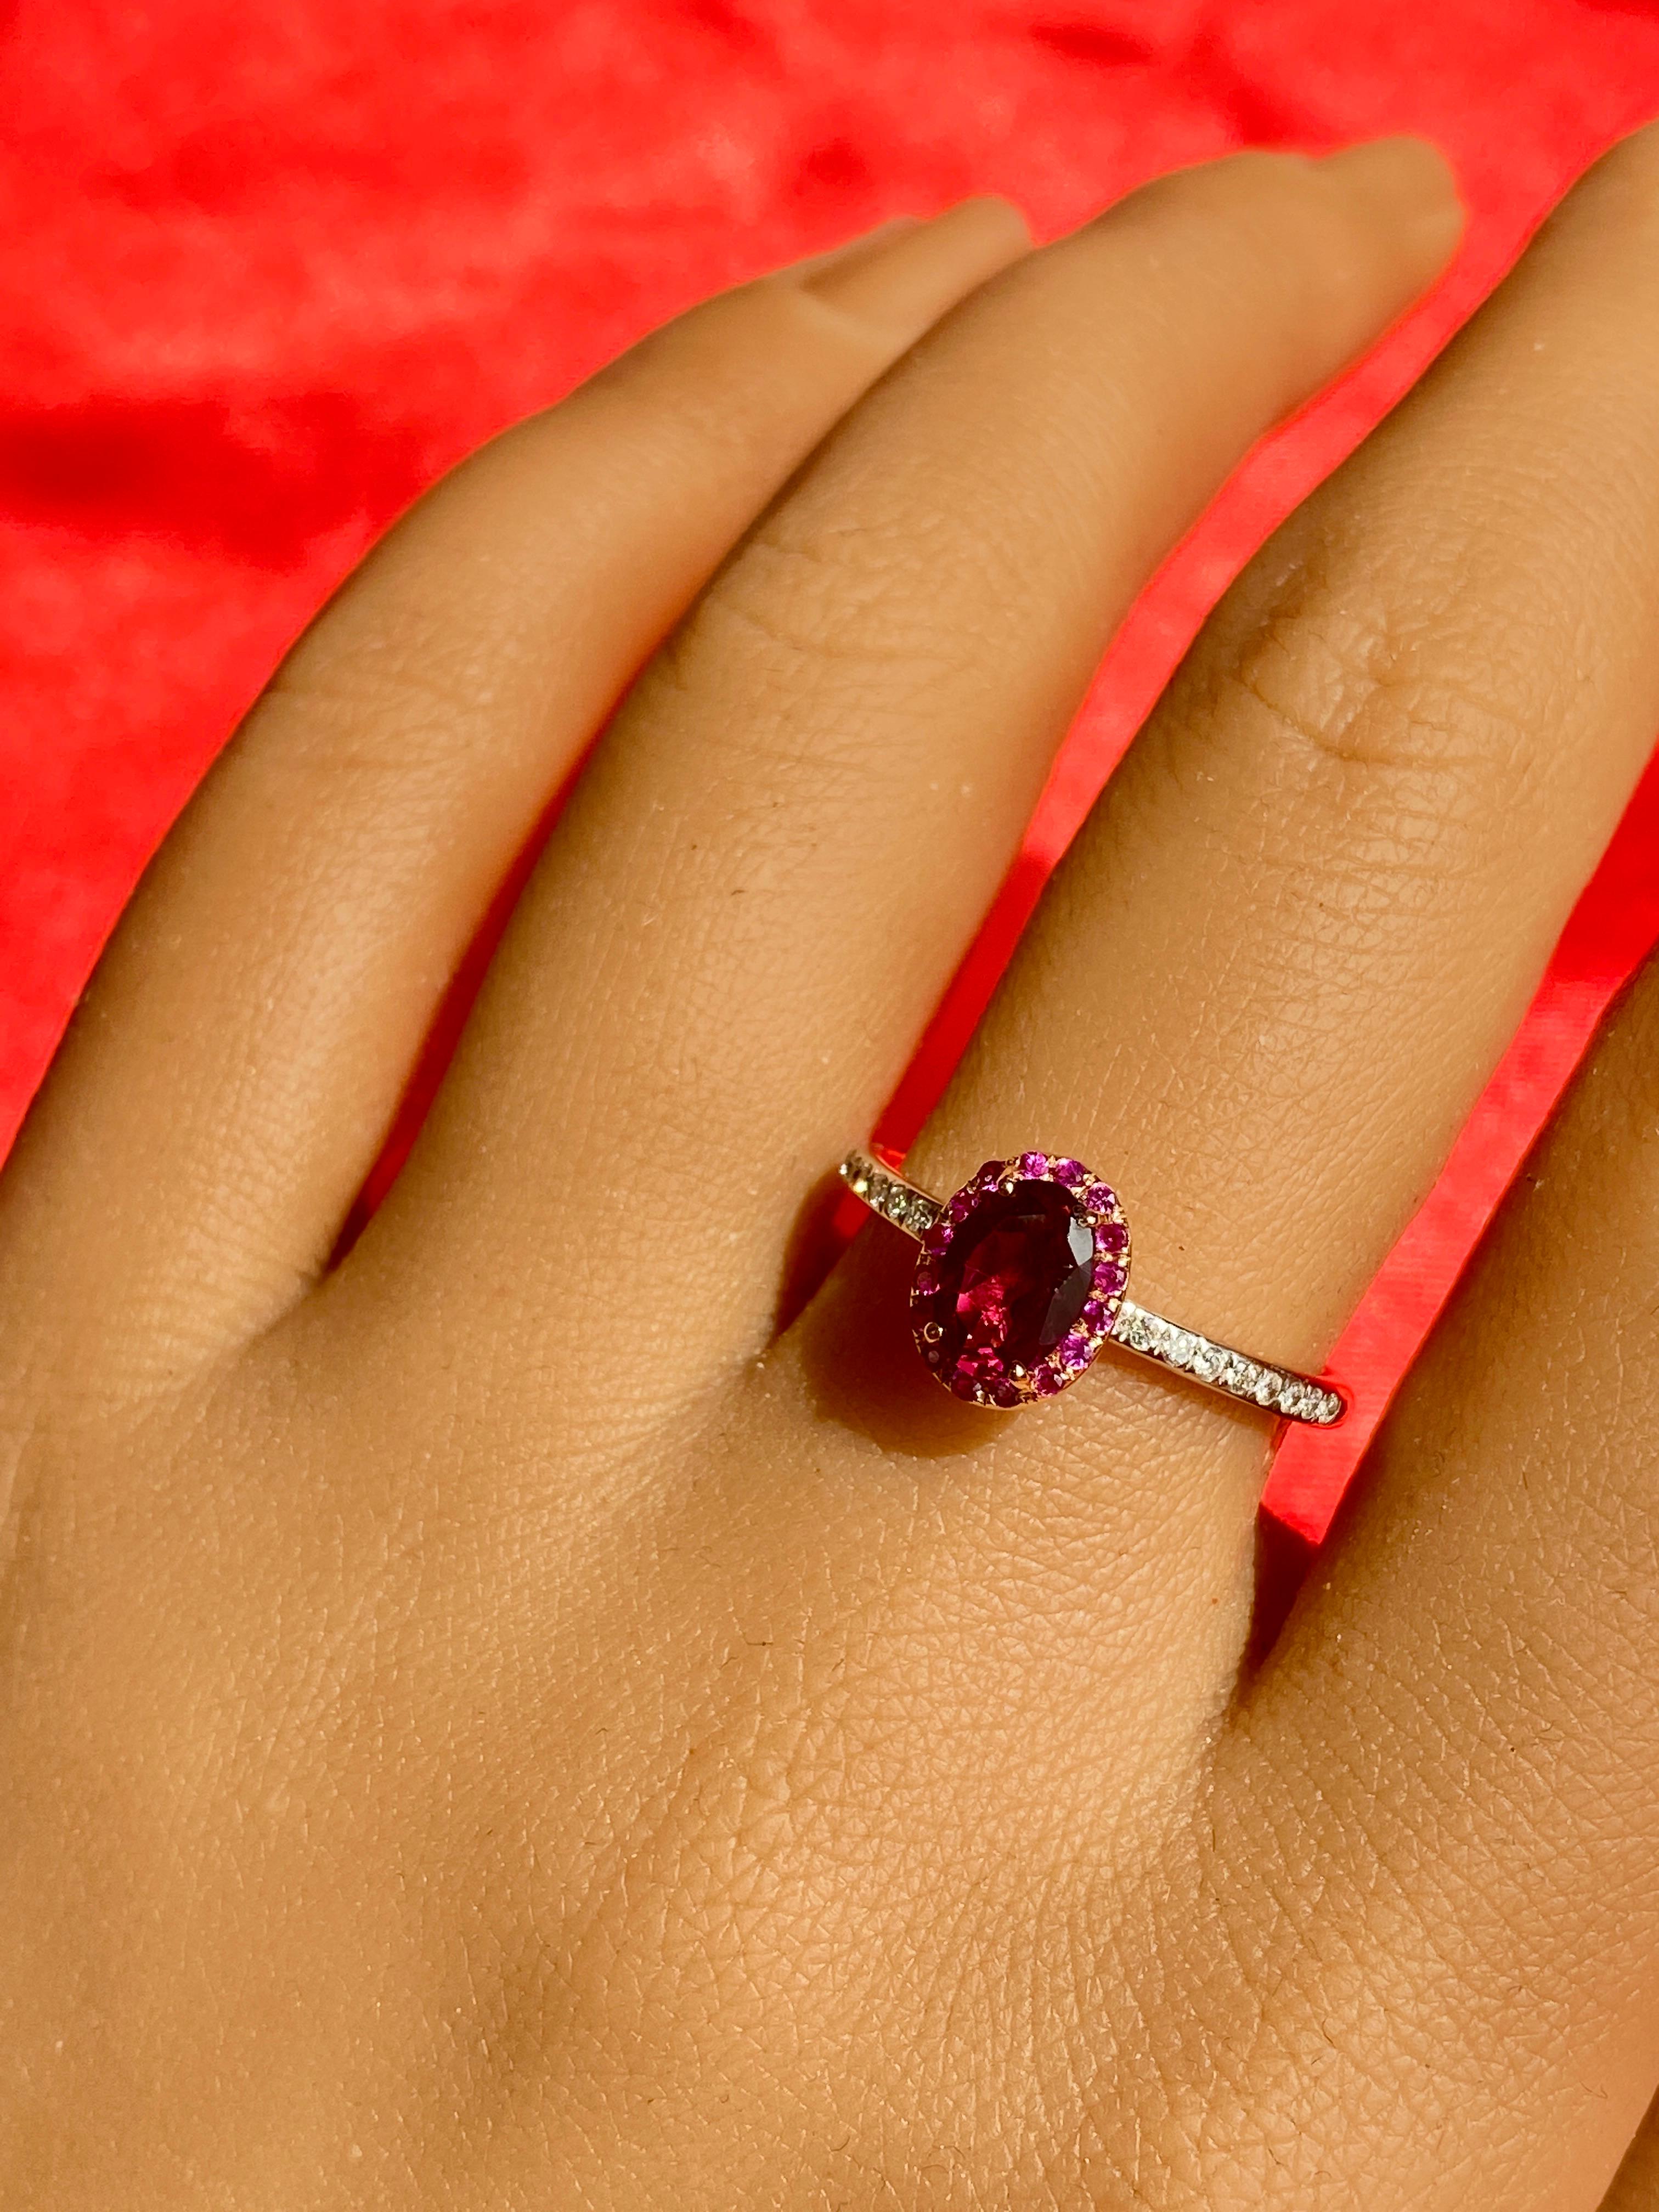 Unser lila Granatring! Der Mittelstein ist ein wunderschöner Rhodolith-Granat! Der Halo besteht aus herrlichen roten Rubinen, und der Schaft ist mit runden weißen Diamanten besetzt! Es ist ein einzigartiger Ring mit warmen Farben, die auf